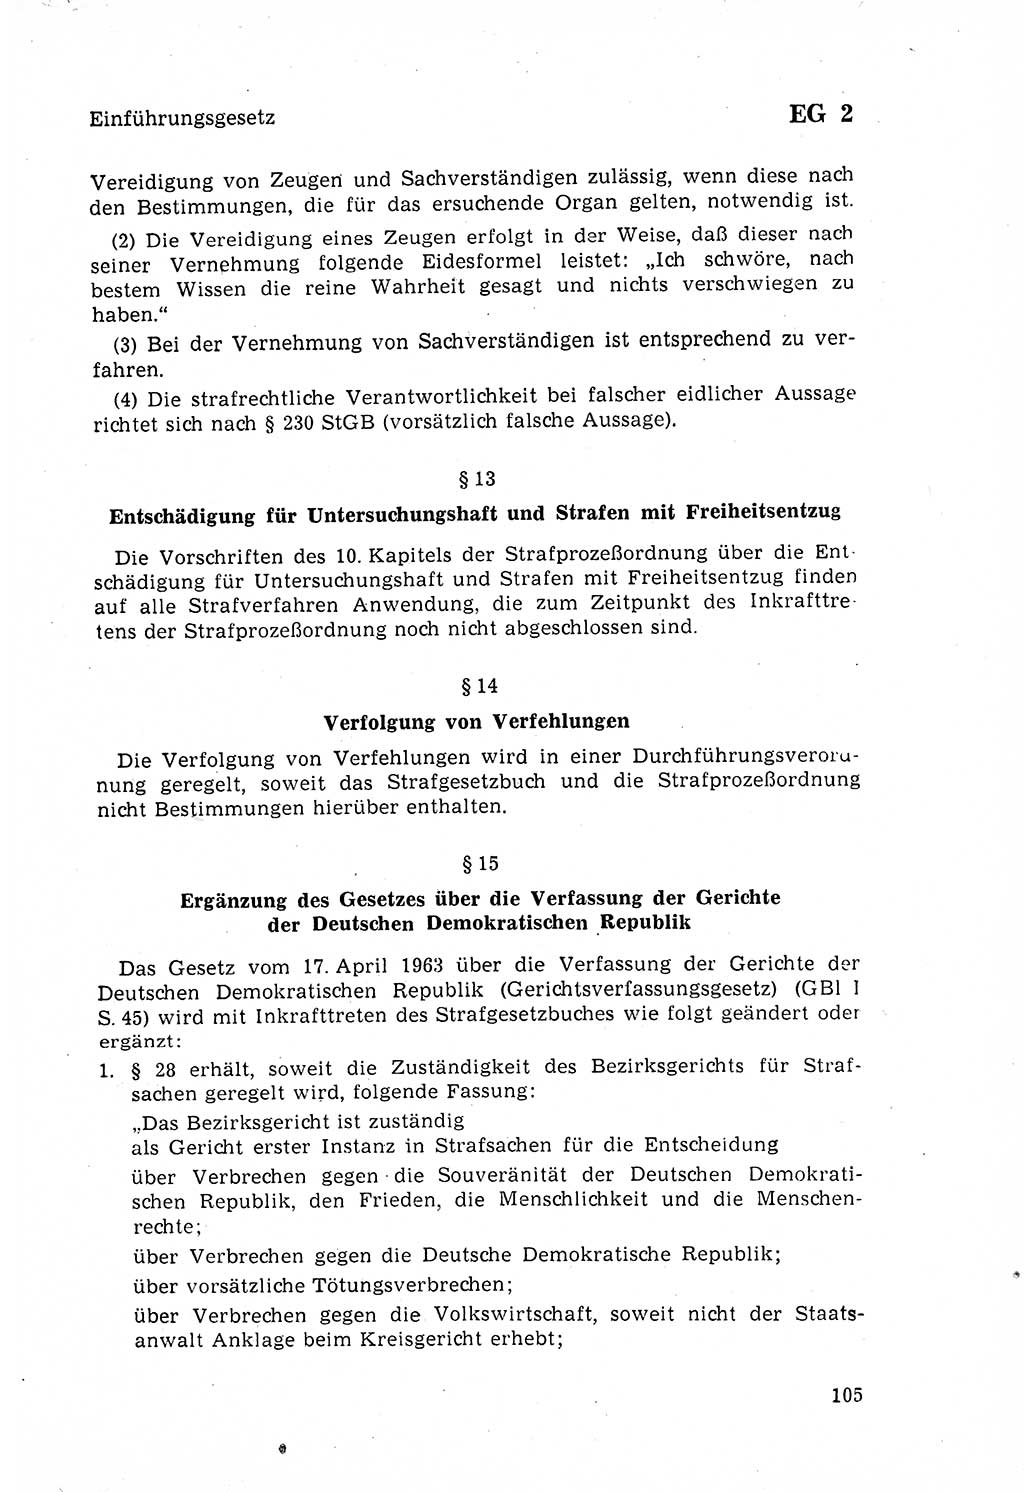 Strafgesetzbuch (StGB) der Deutschen Demokratischen Republik (DDR) 1968, Seite 105 (StGB DDR 1968, S. 105)